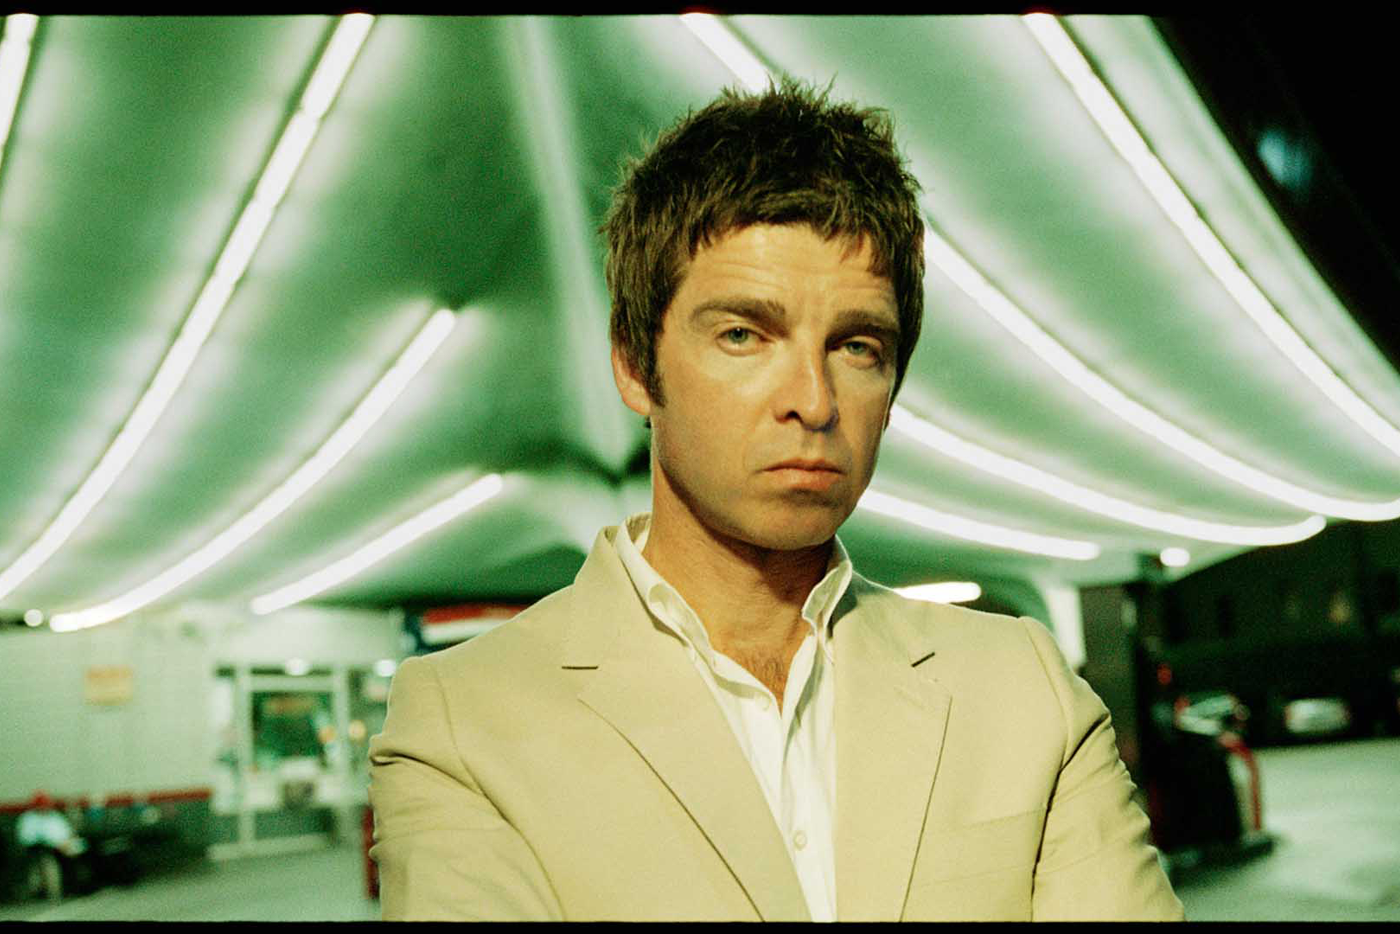 Noel Gallagher habla sobre sus antiguos problemas con la cocaina